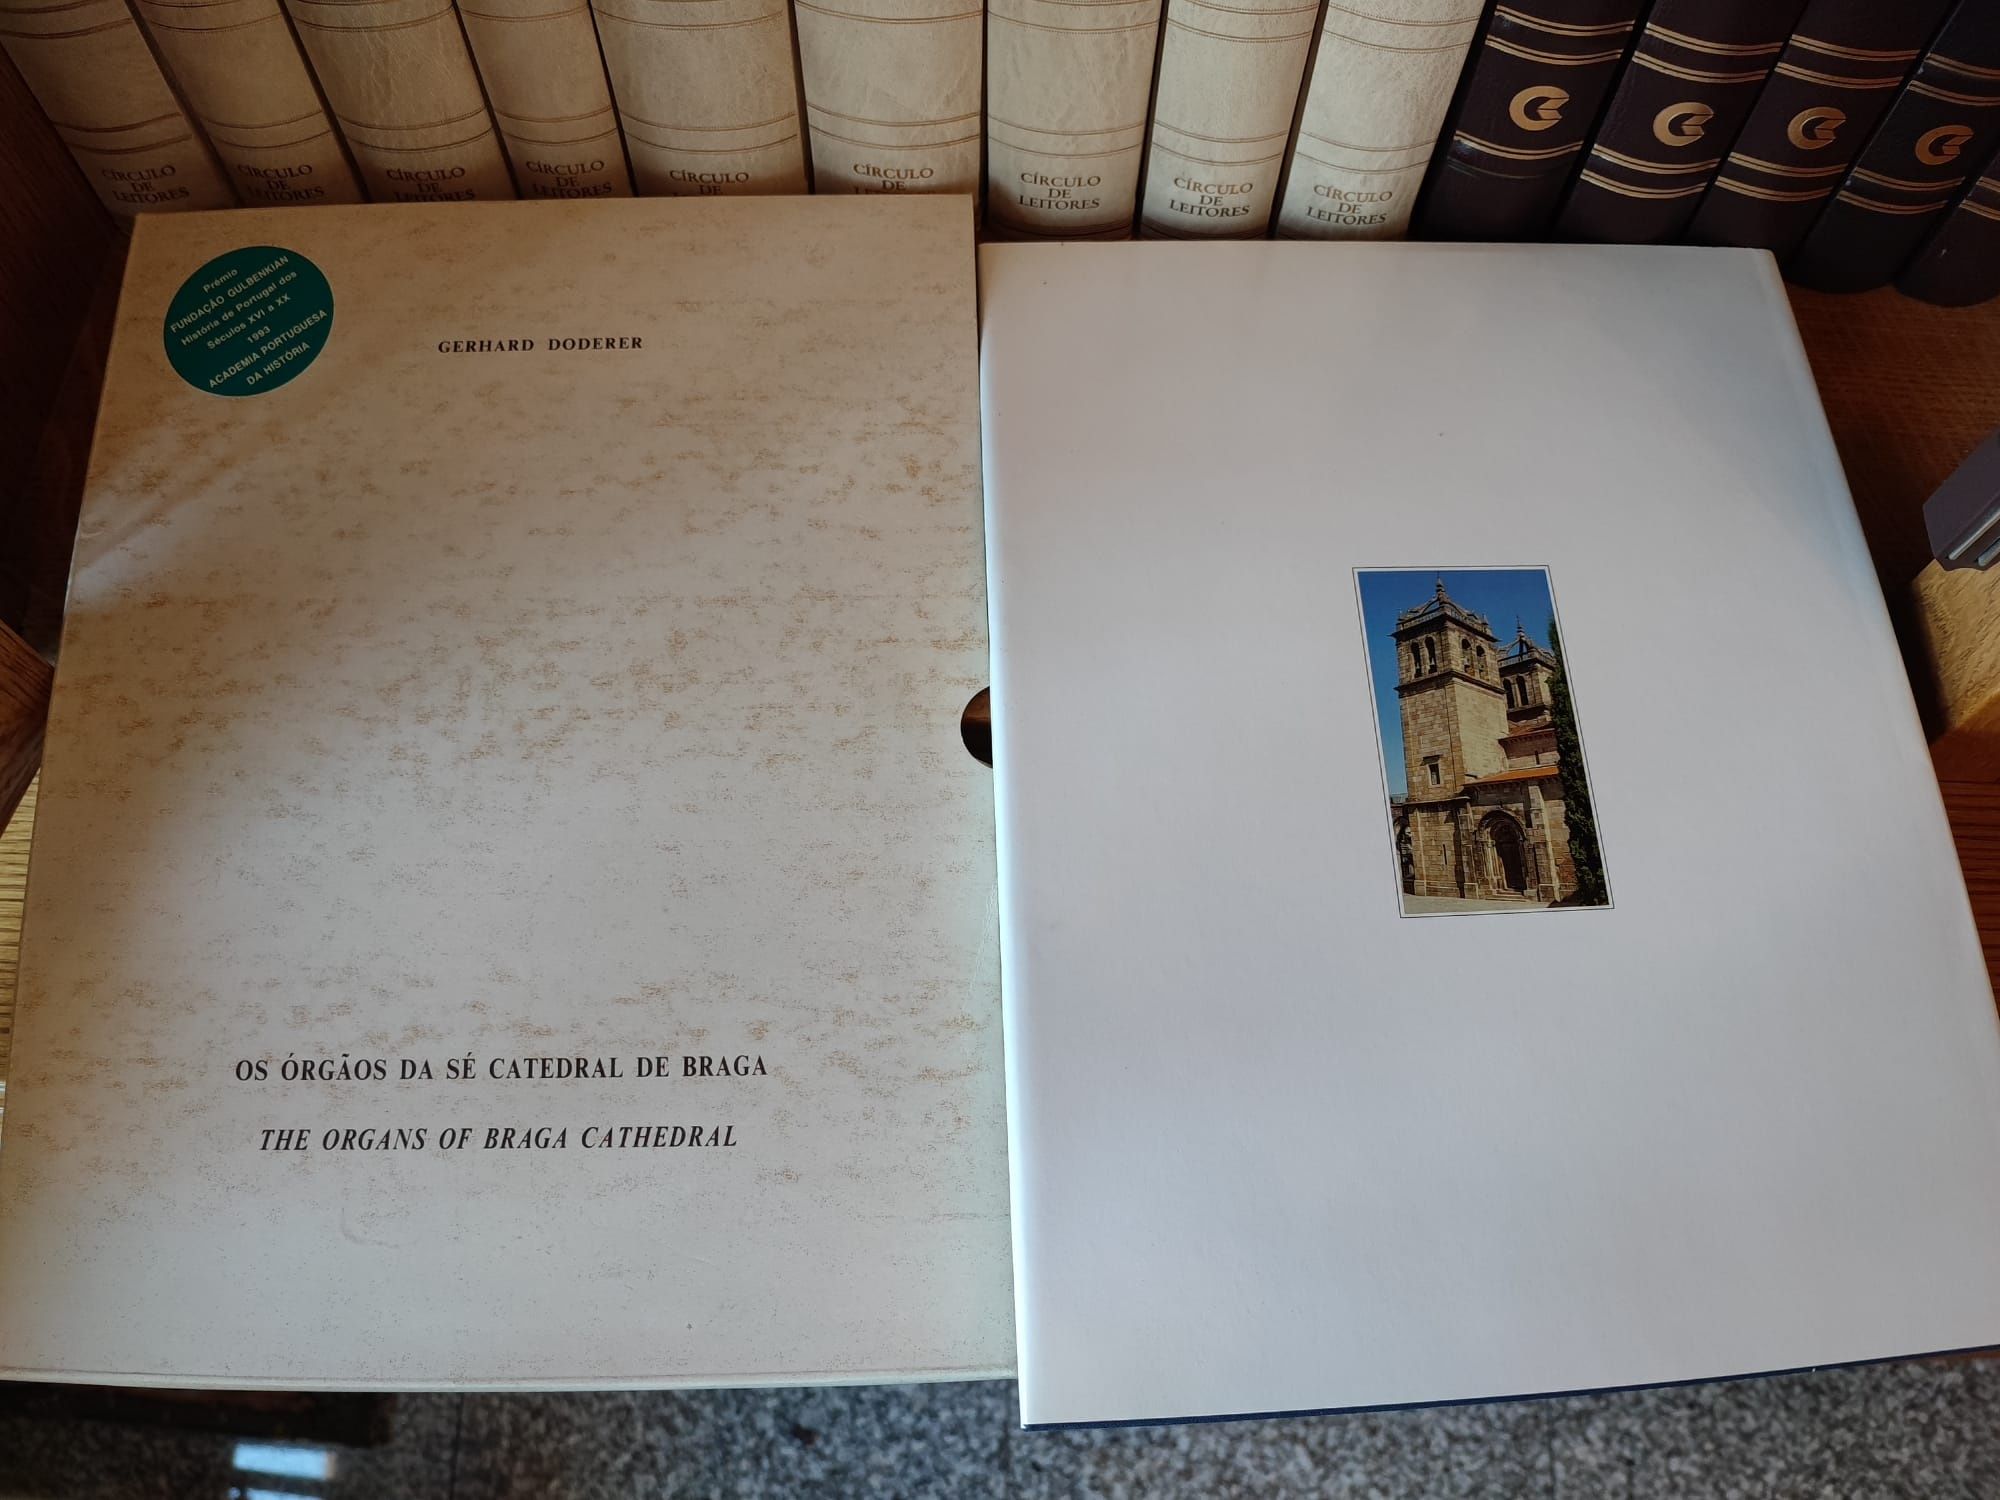 Livro "Os Órgãos da Sé Catedral de Braga"